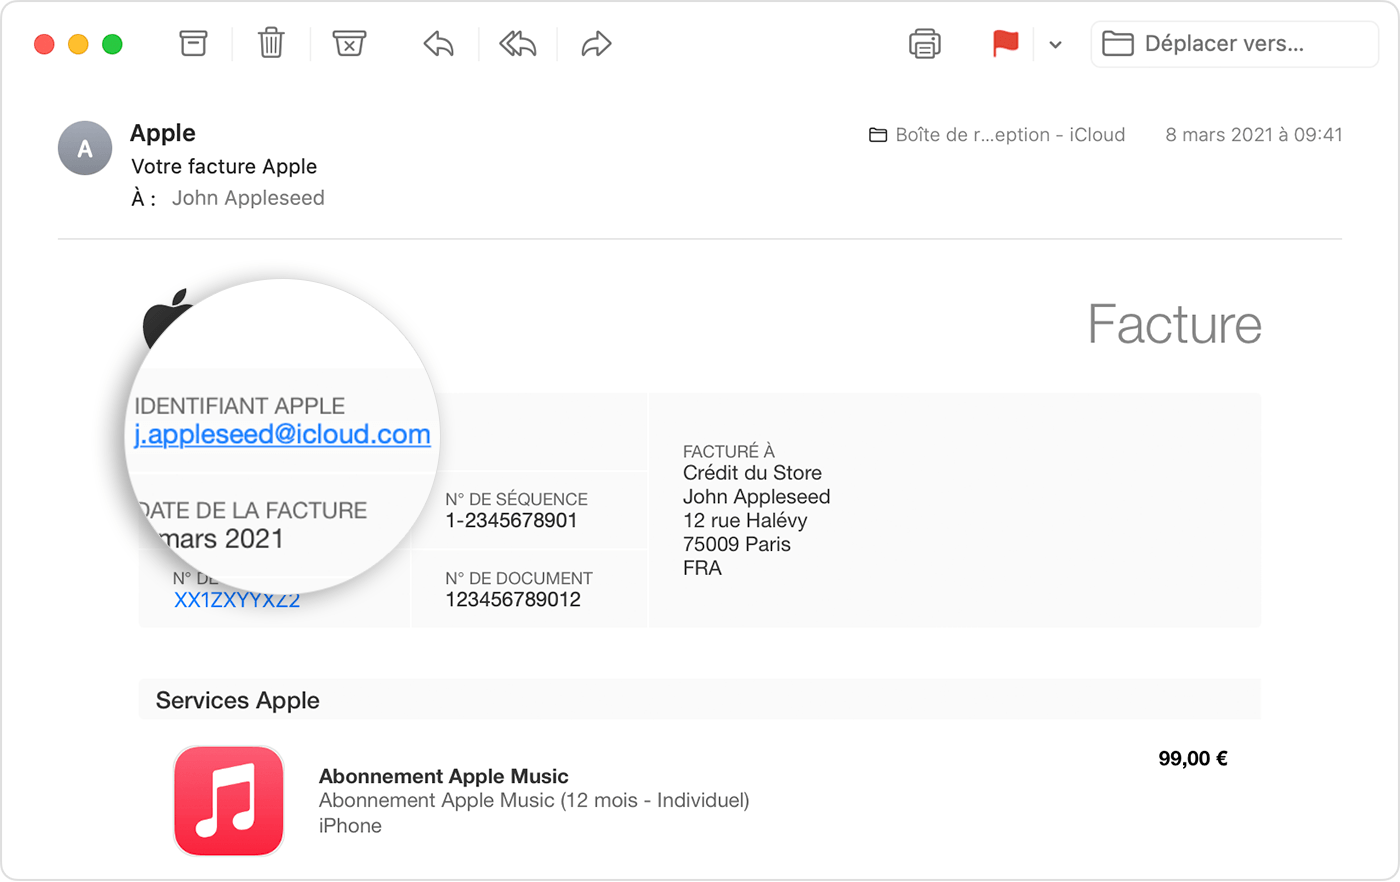 Une facture Apple reçue par e-mail affichant l’identifiant Apple de la personne qui a souscrit un abonnement Apple Music.